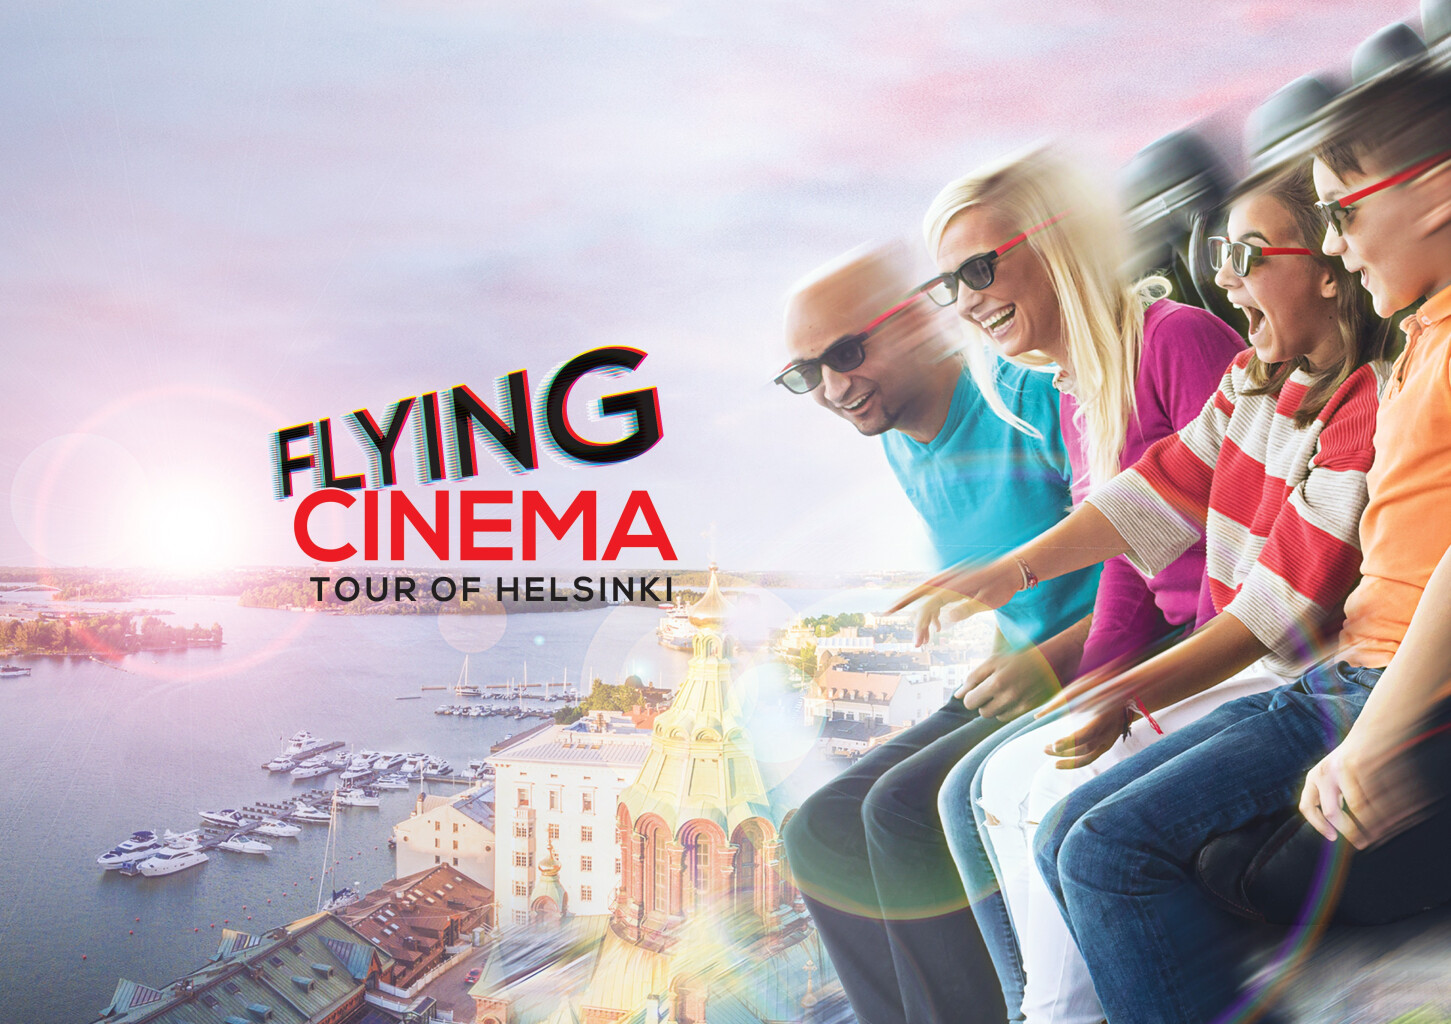 Flying cinema - Virtuaalielokuvaelämys Helsingissä